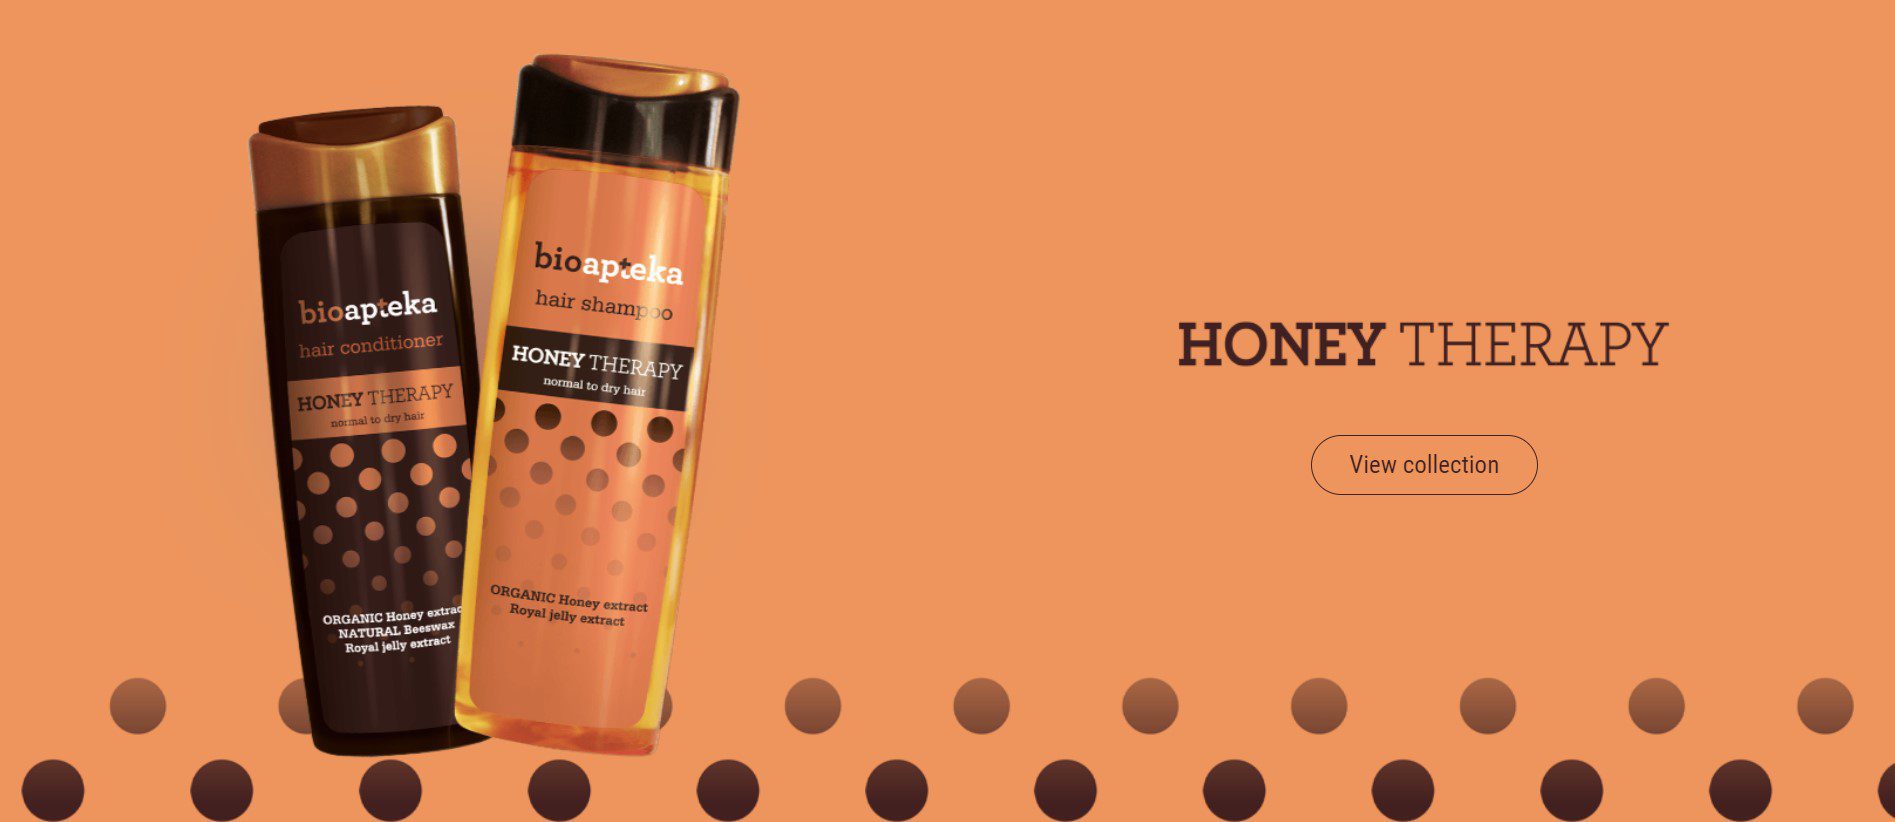 Biologische Honey Therapy Haarconditioner met honing voor droog haar - ongelofelijke zachtheid 250 ml